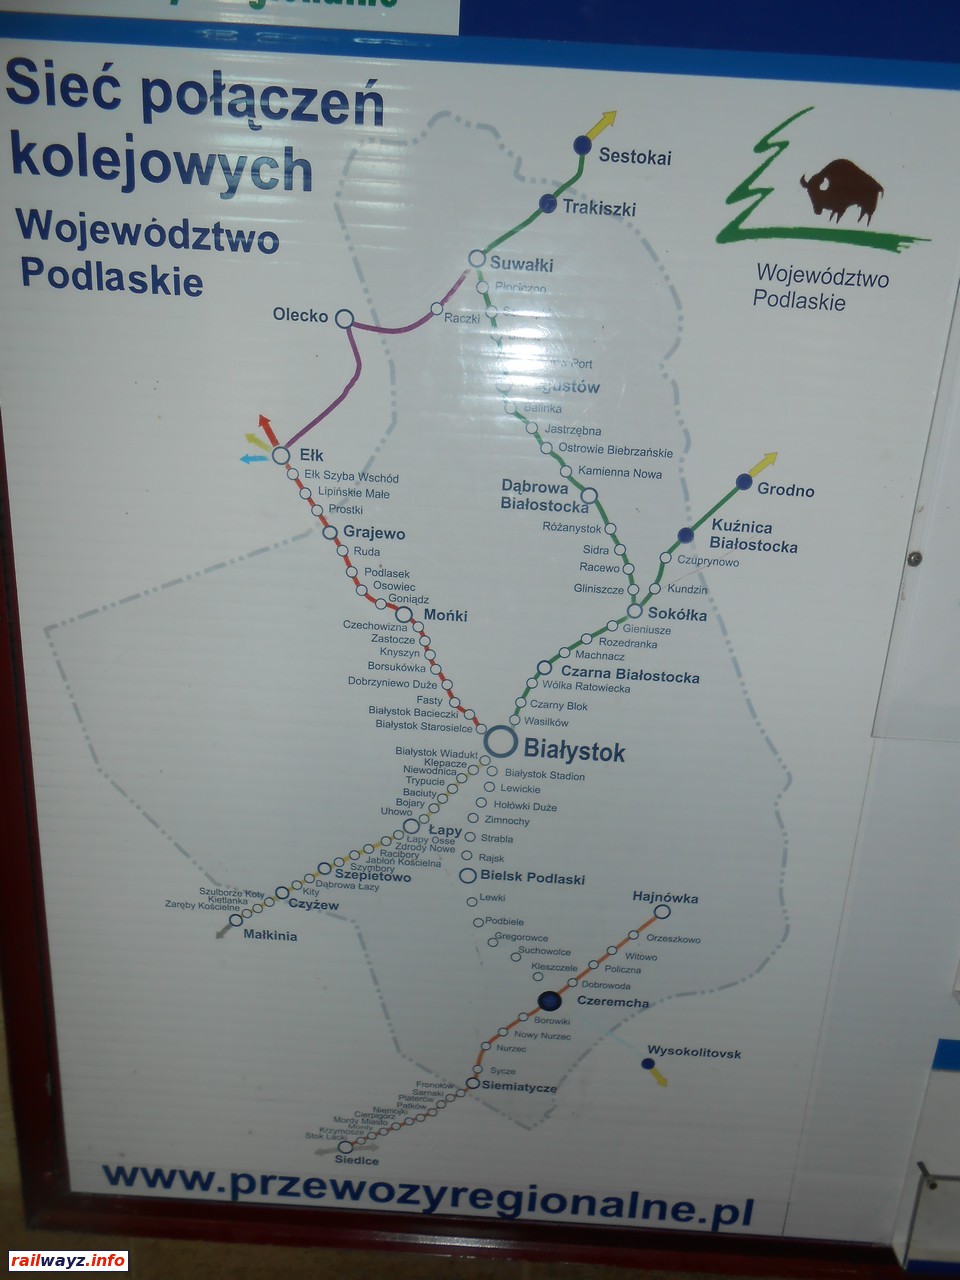 Сеть железных дорог Подляшского воеводства